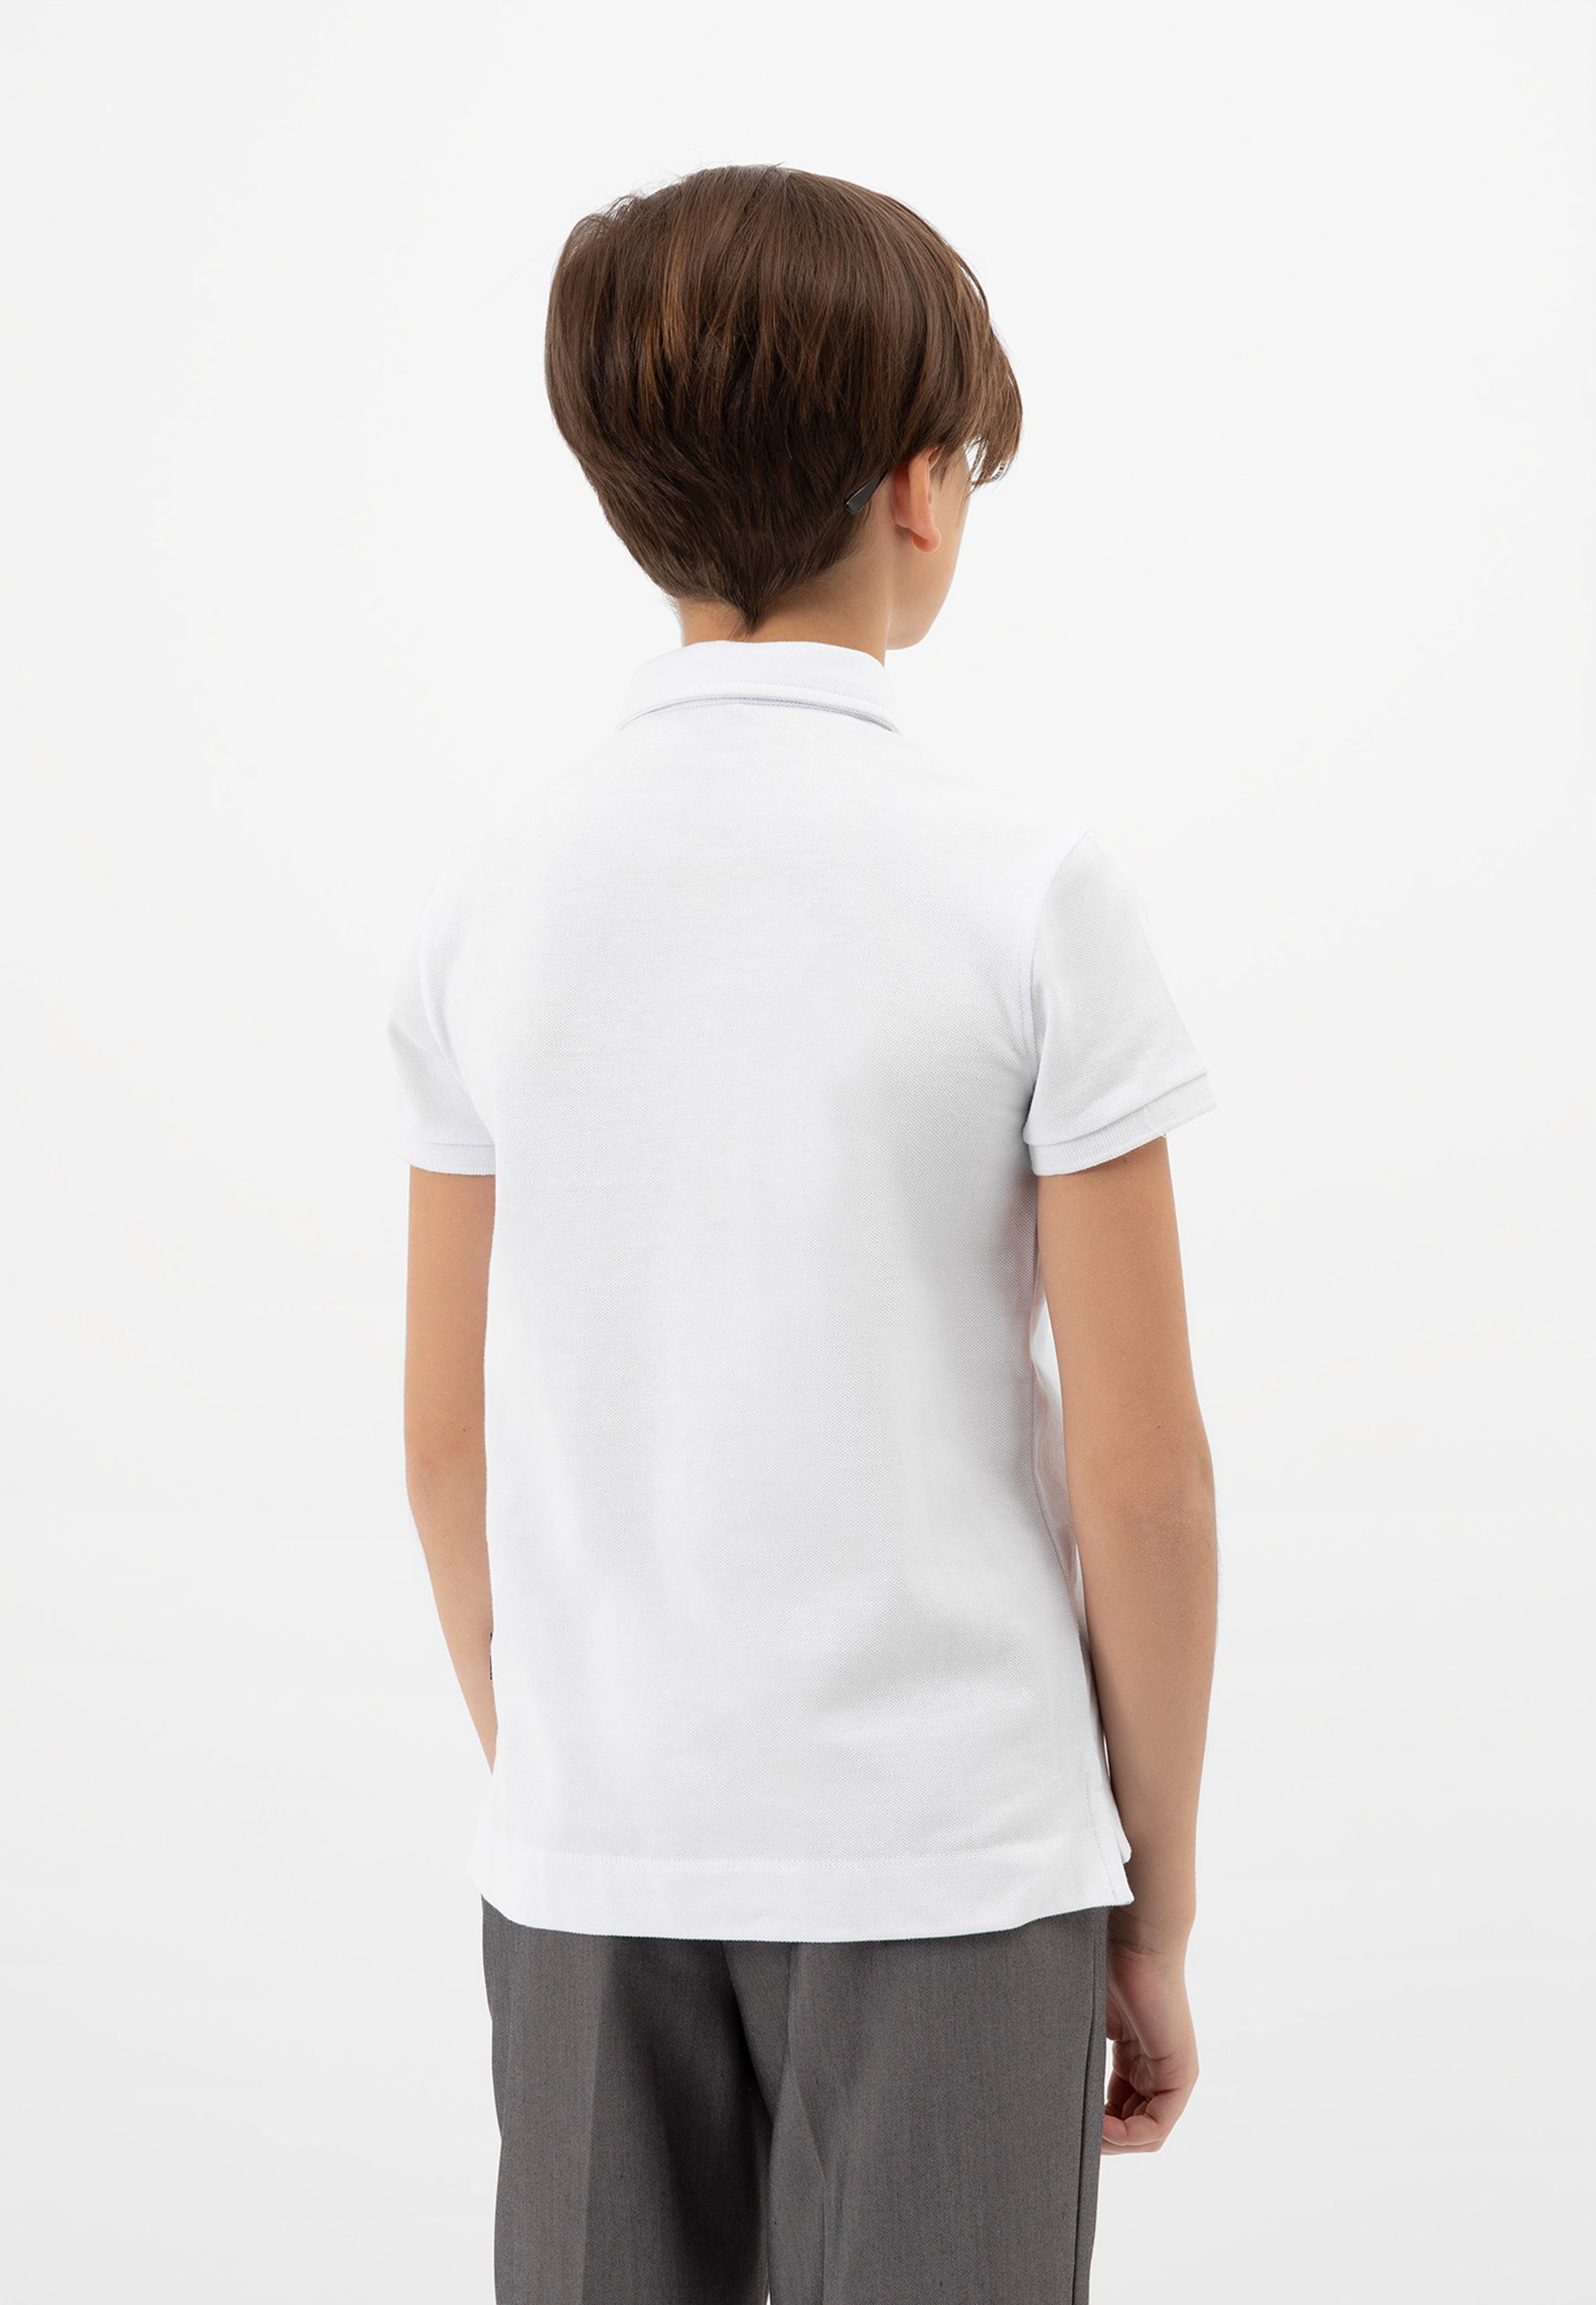 Gulliver Poloshirt in schlichtem Design, Ideal kombinierbar zu Stoffhosen,  Jeans oder Shorts